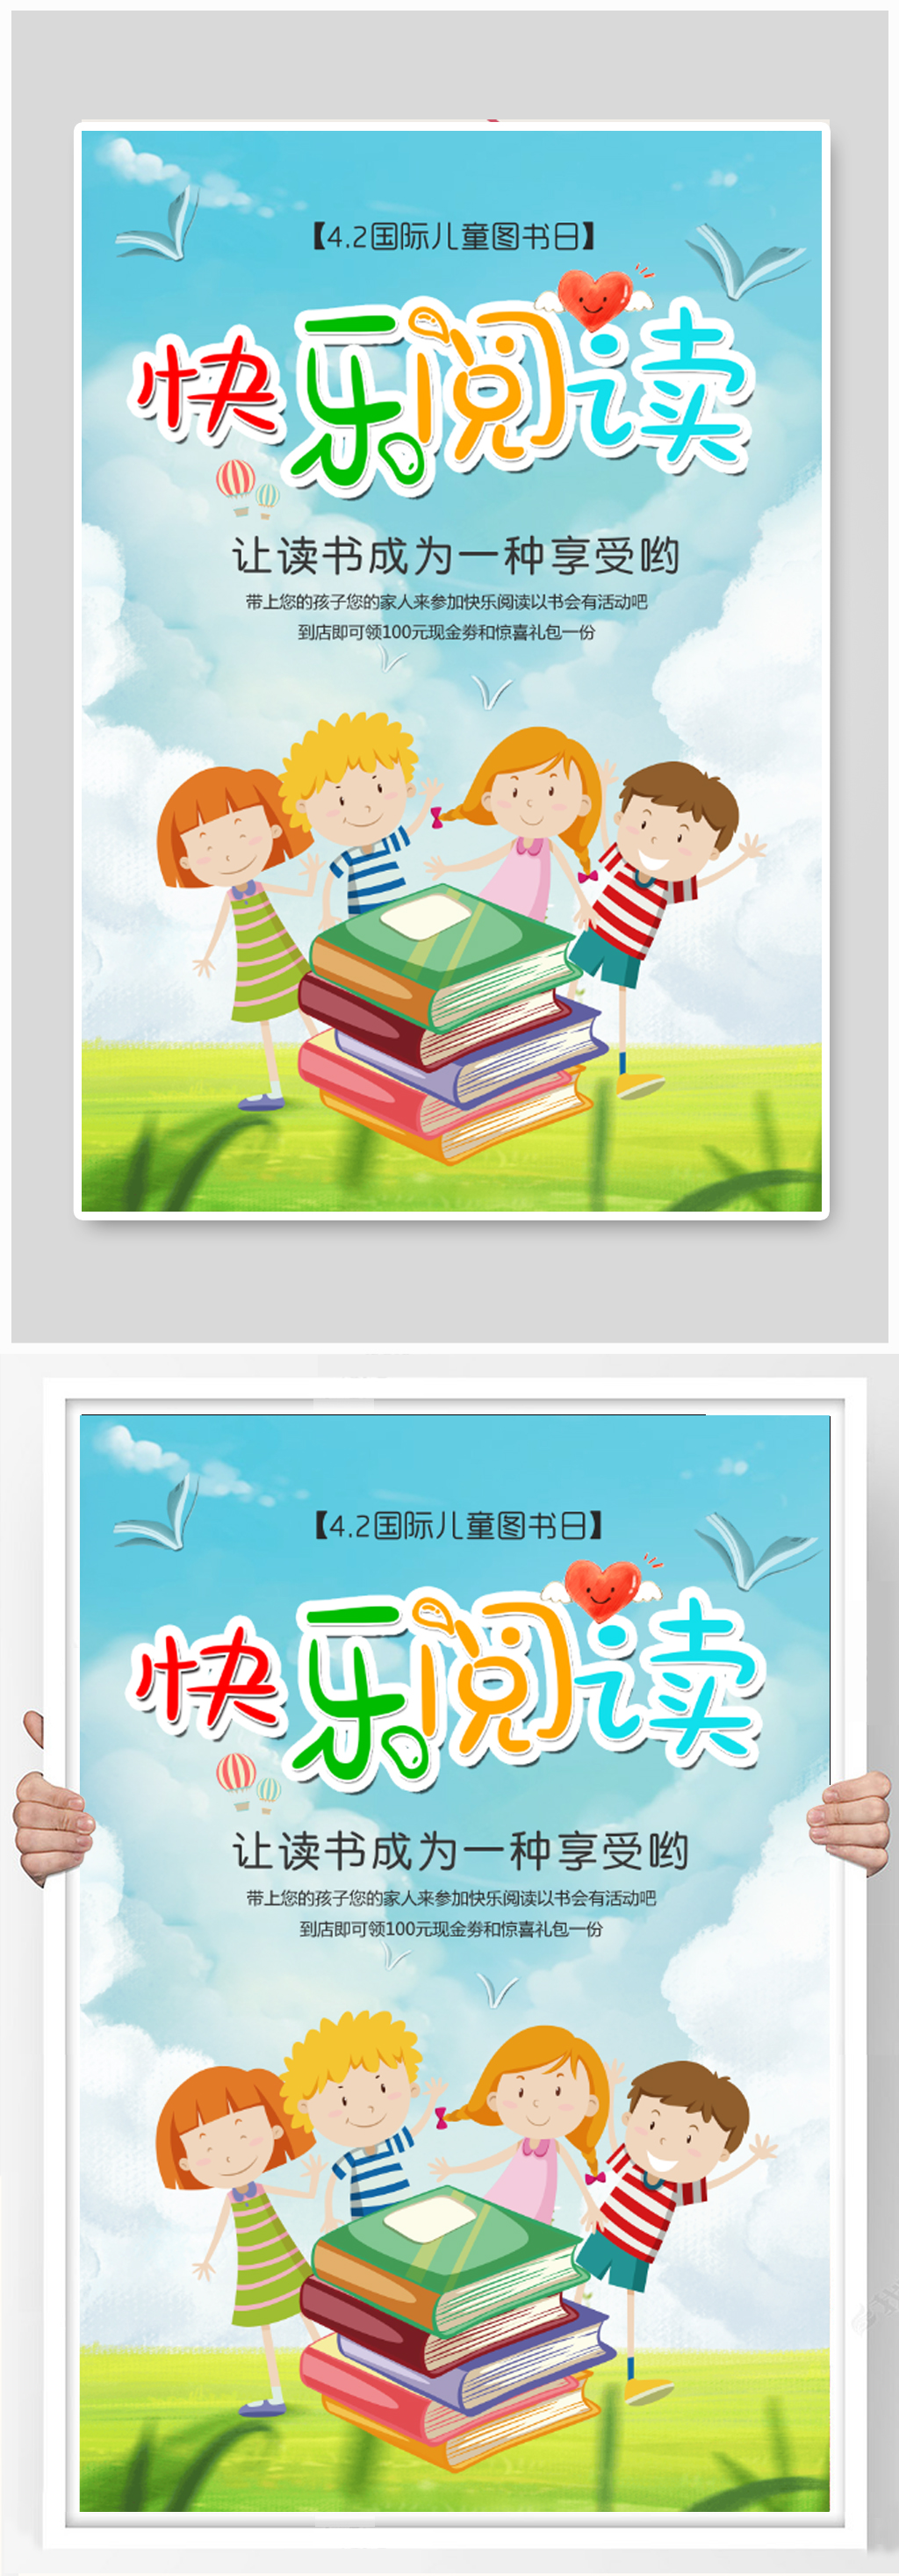 国际儿童图书日快乐阅读海报